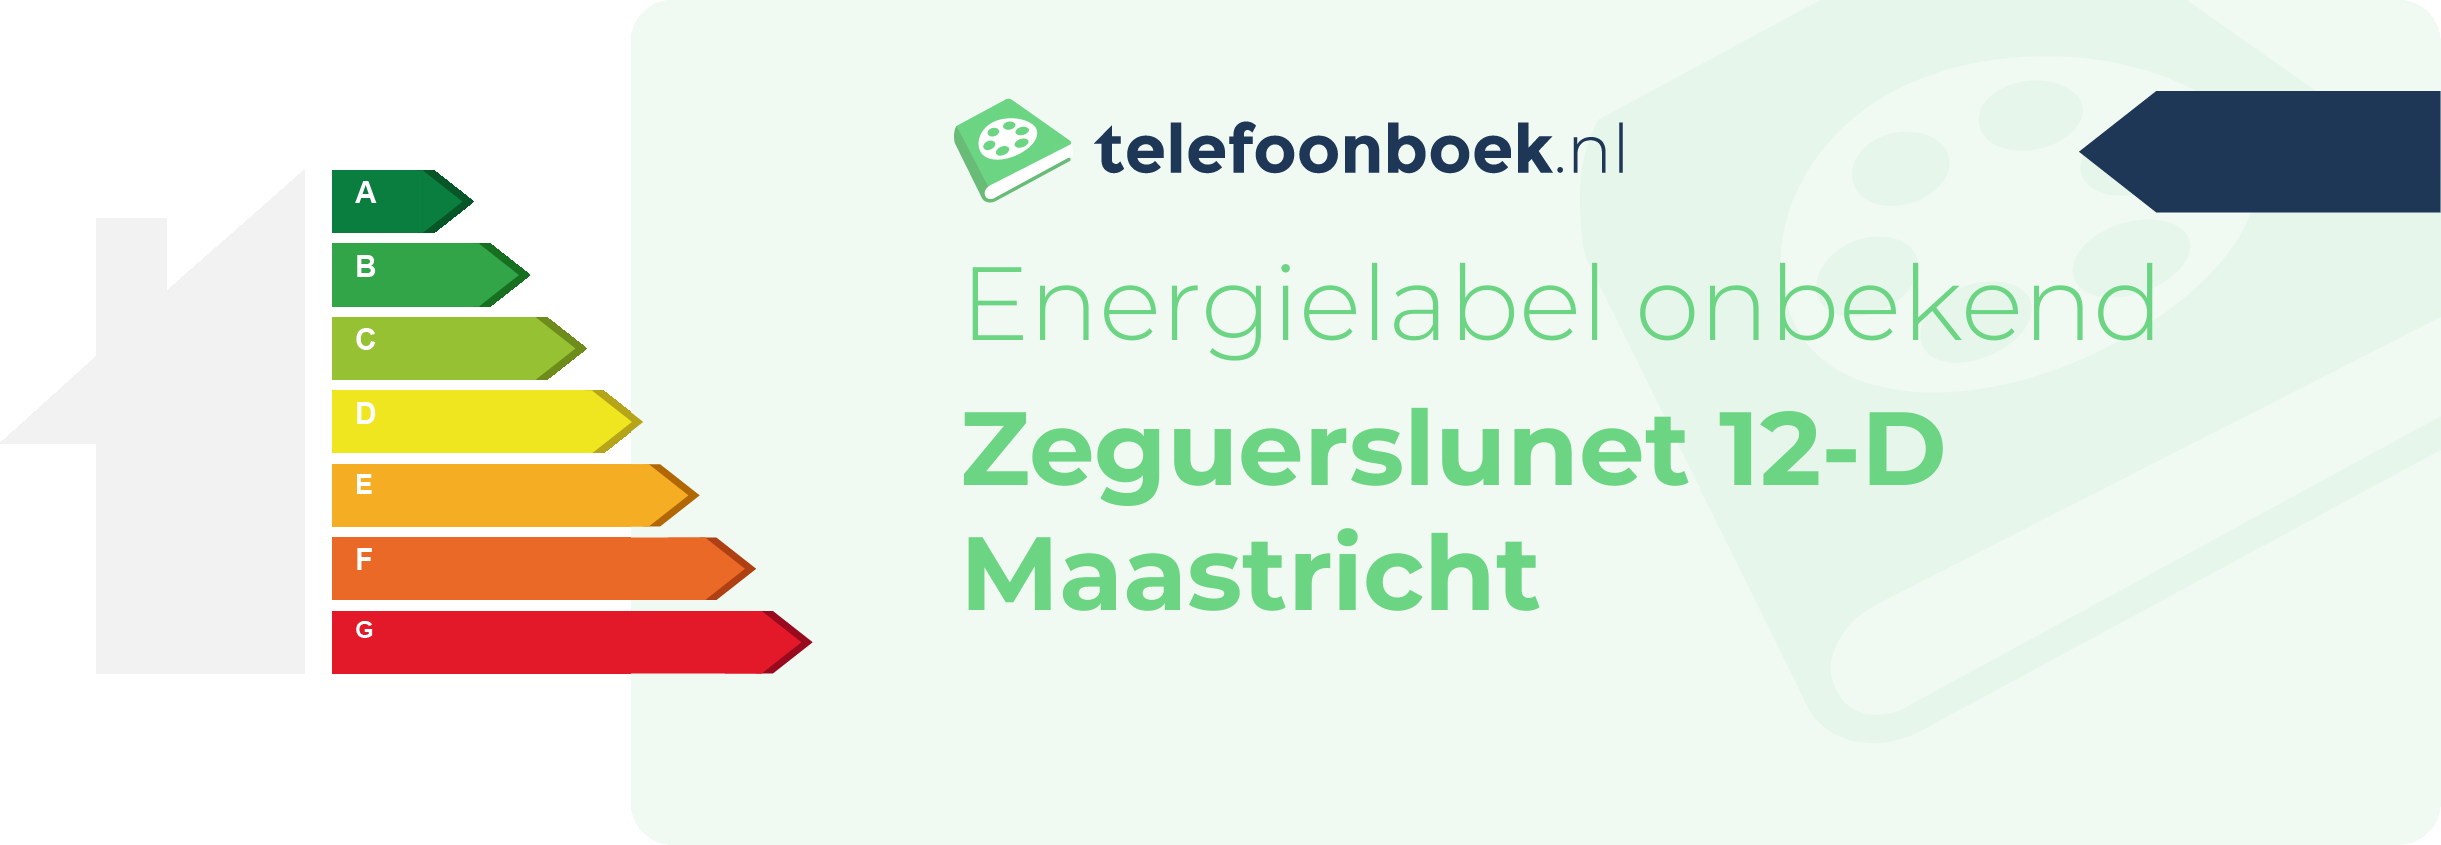 Energielabel Zeguerslunet 12-D Maastricht